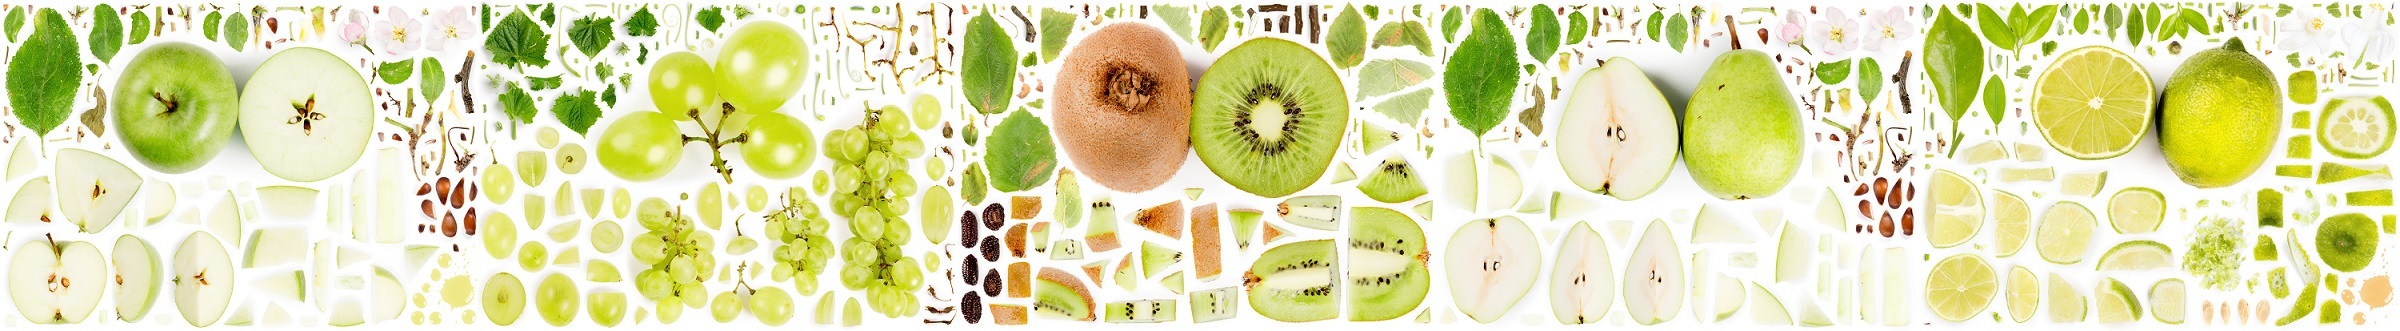 緑の果物の画像